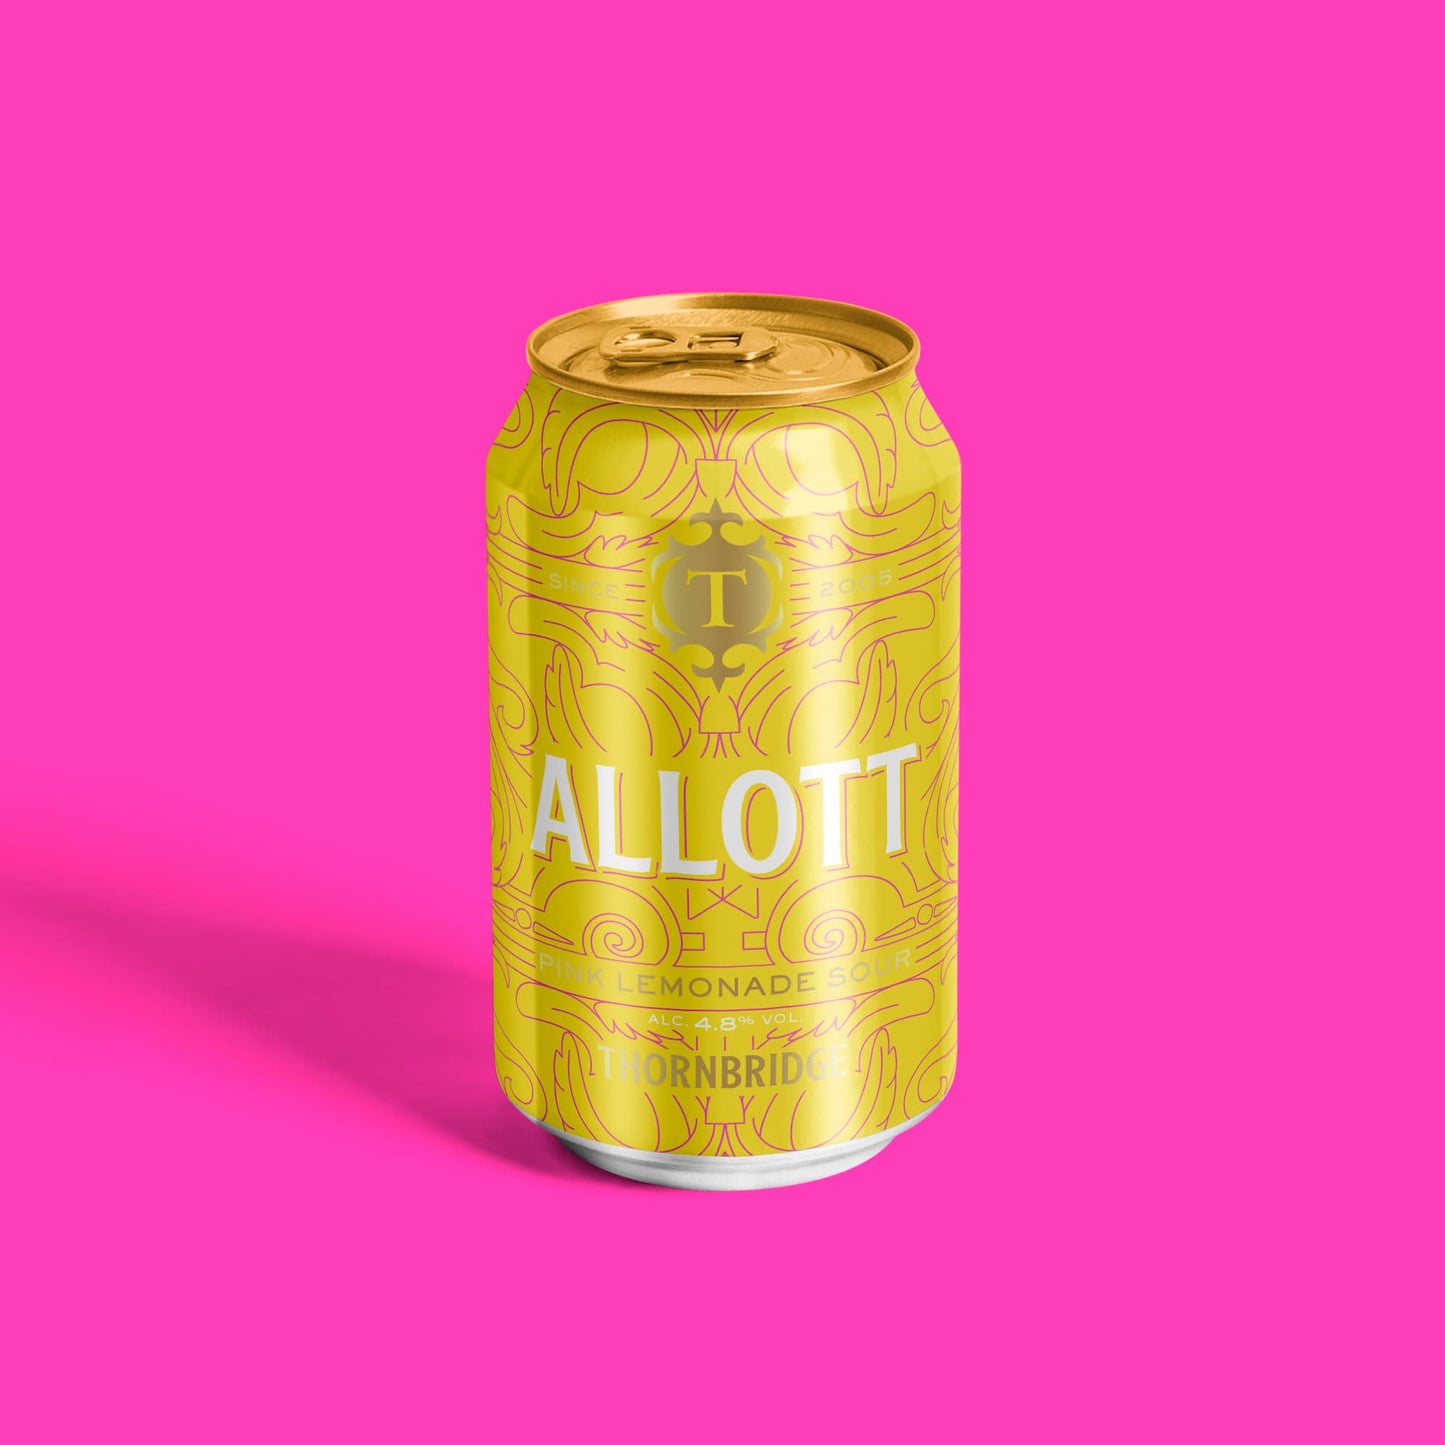 Allott, 4.8% ABV Pink Lemonade Sour Beer - Single Can Thornbridge